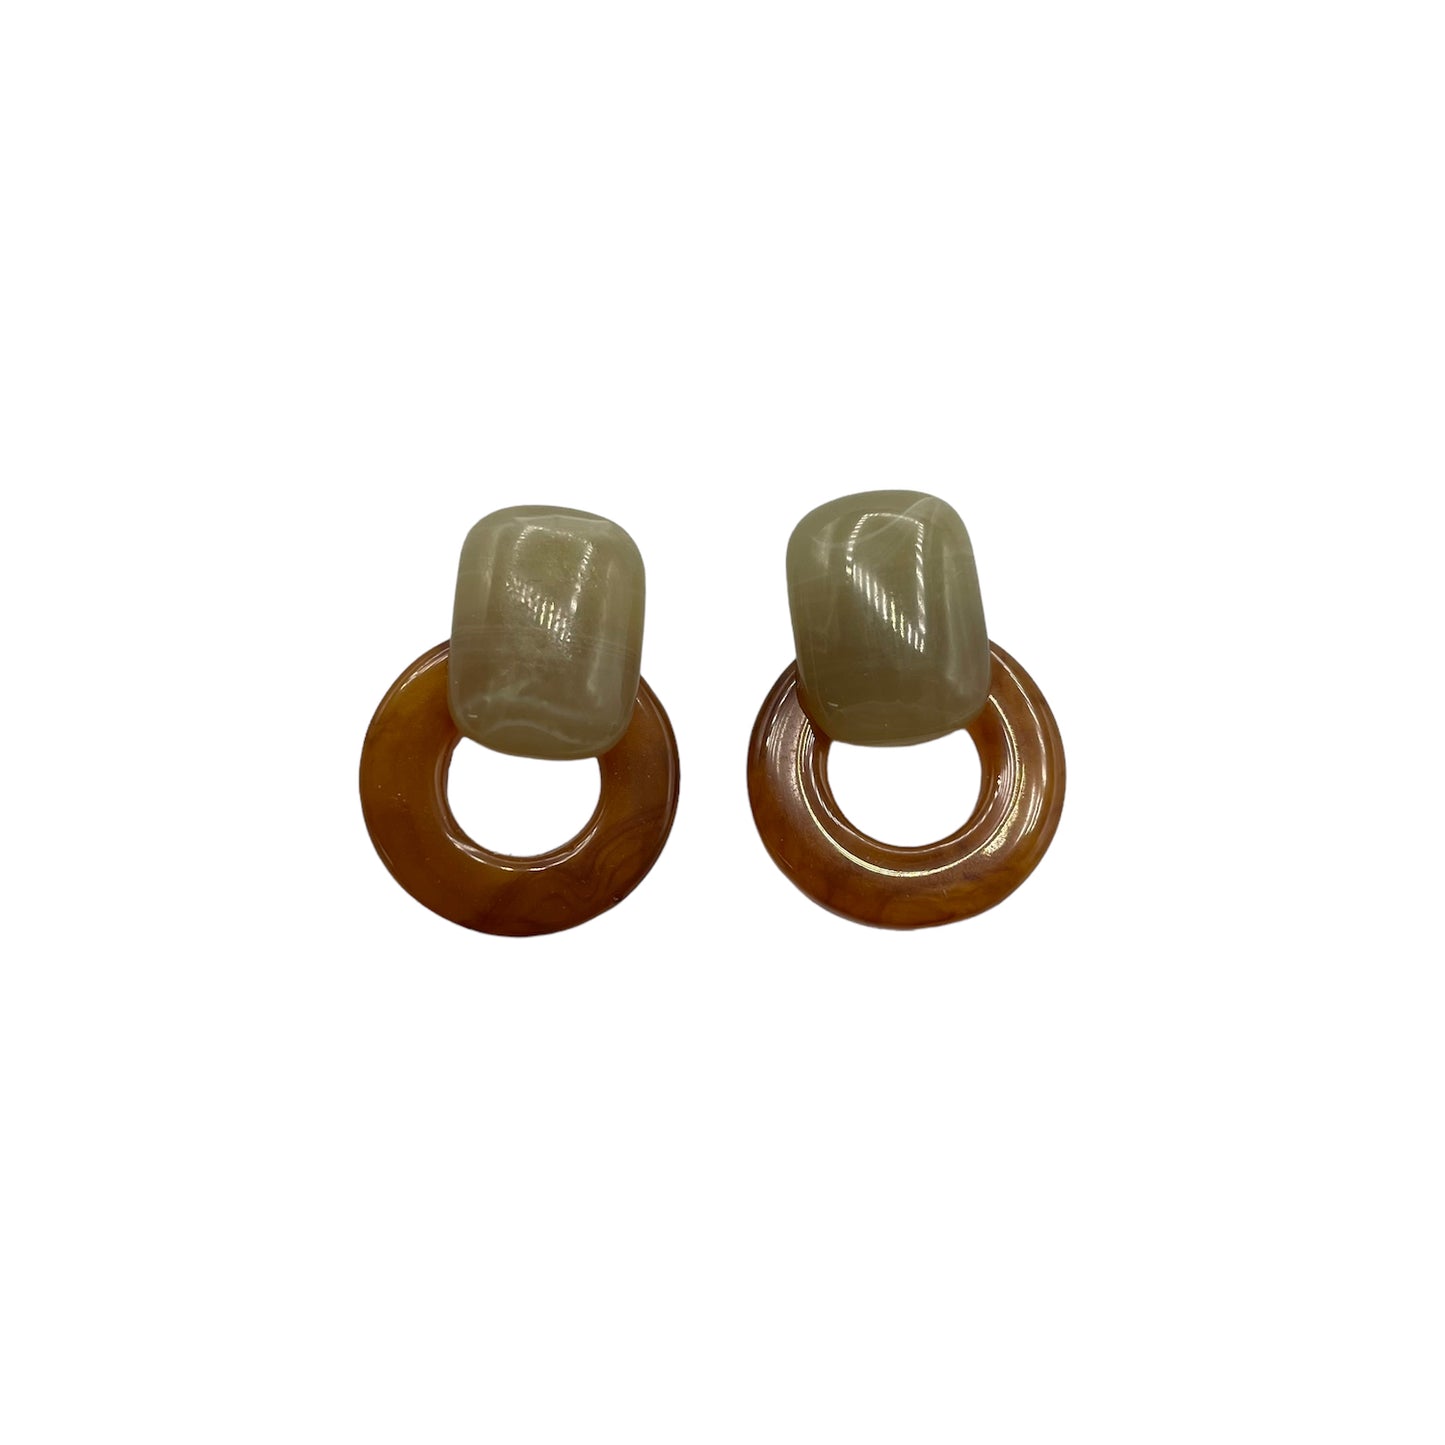 Amber ring earrings